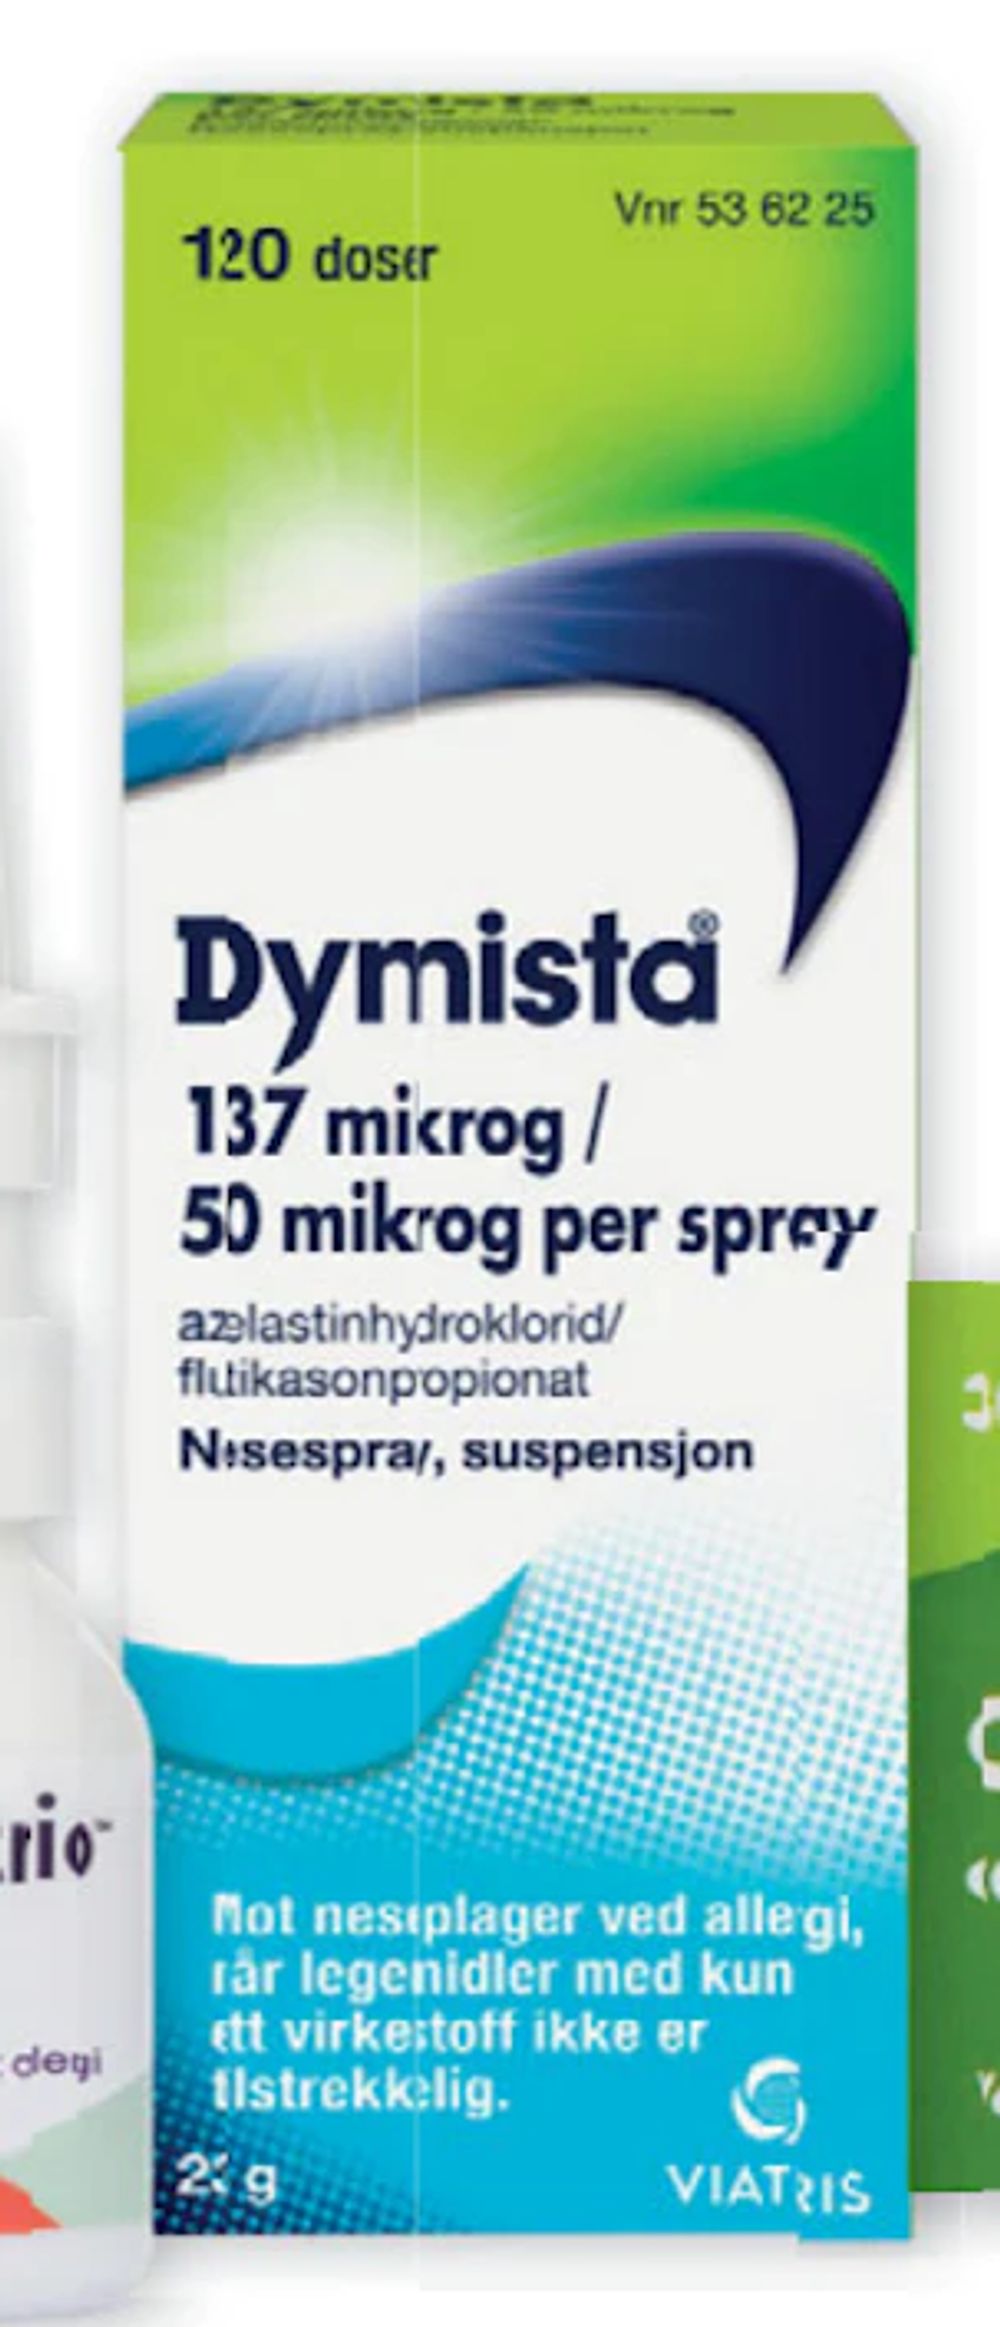 Tilbud på Dymista nesespray fra Vitusapotek til 354,90 kr